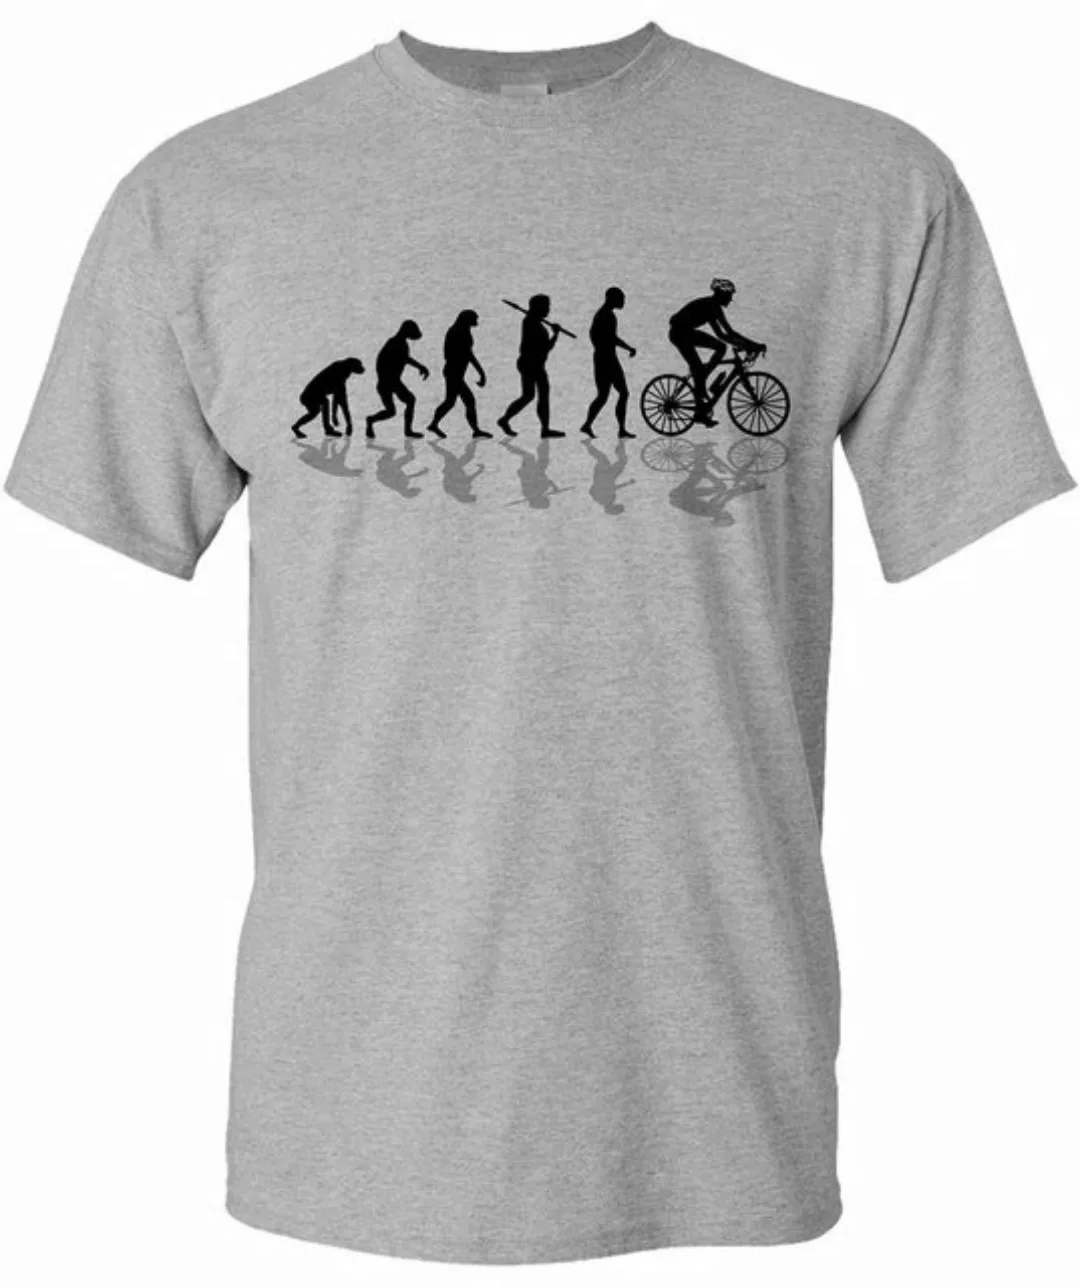 Baddery Print-Shirt Fahrrad T-Shirt : Bike Evolution - Sport Tshirts Herren günstig online kaufen